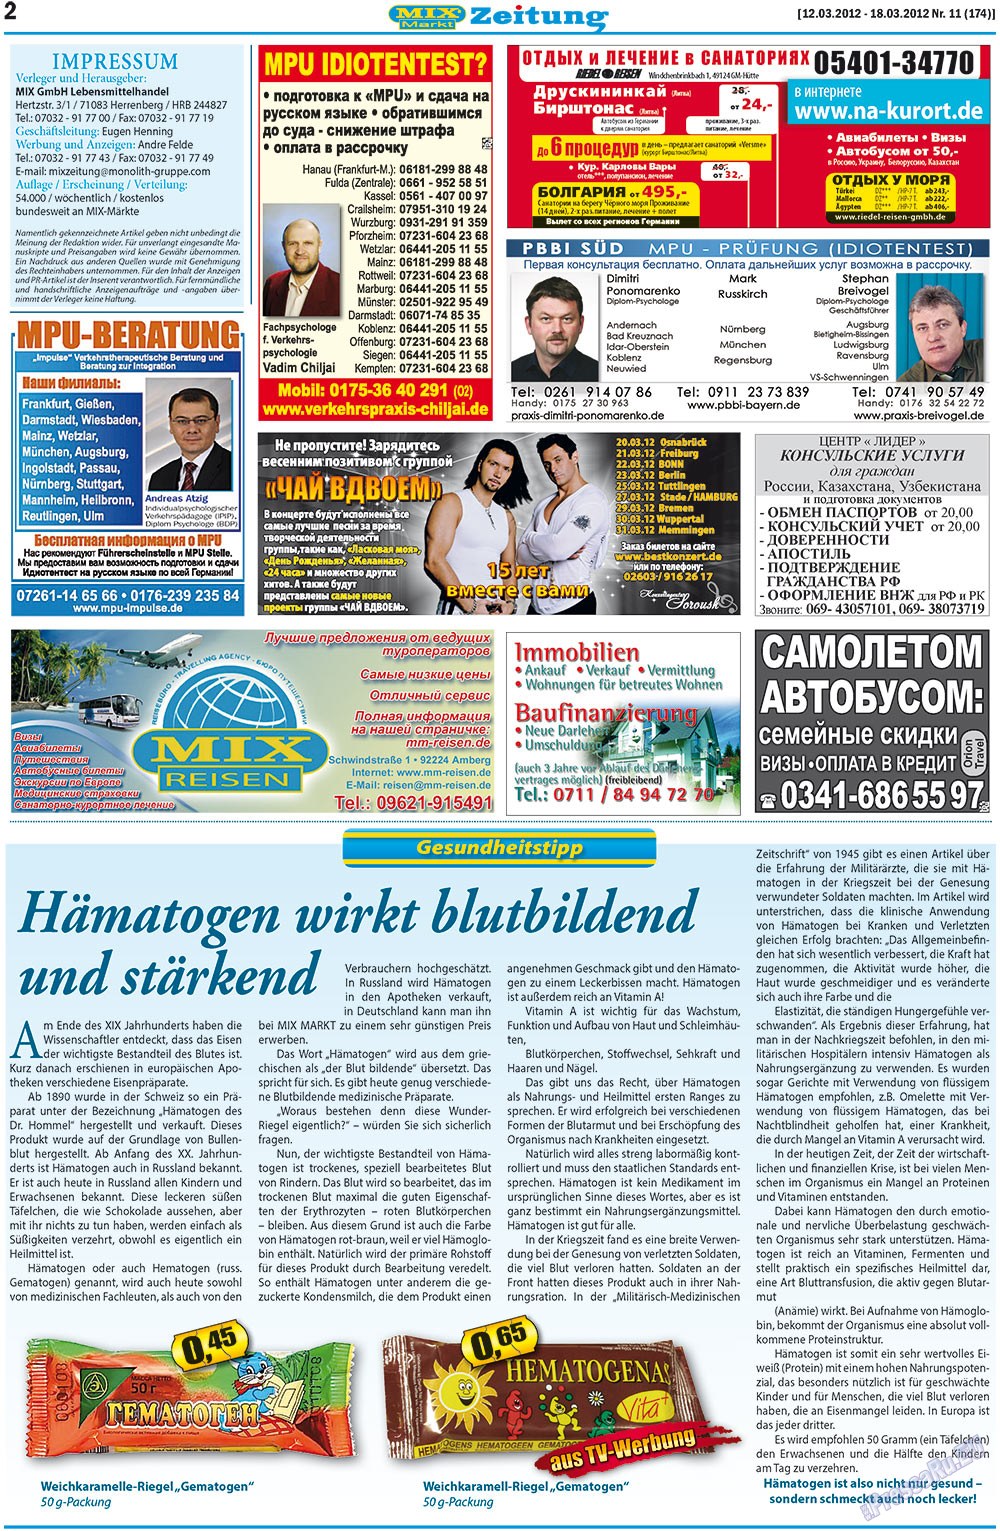 MIX-Markt Zeitung, газета. 2012 №11 стр.2